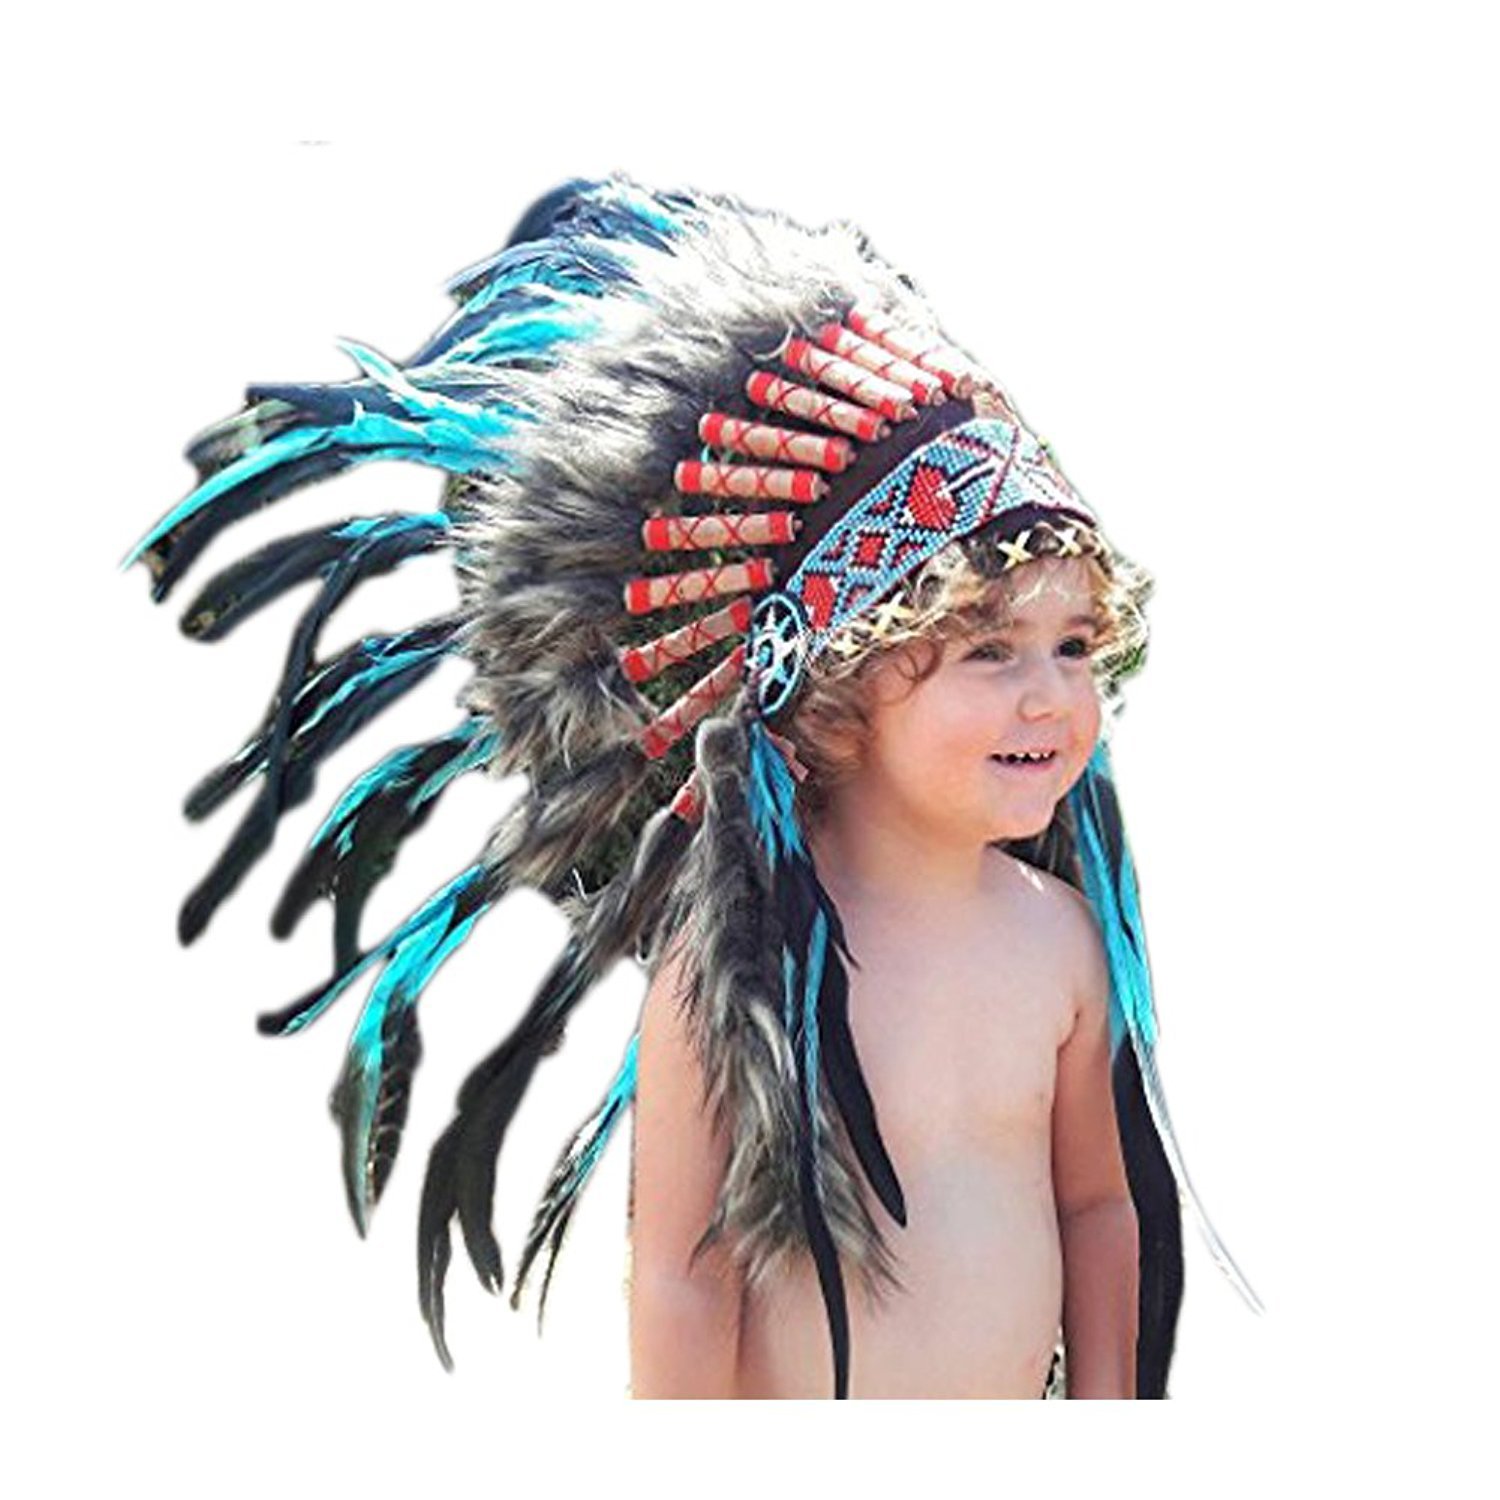 KARMABCN N11- Von 2-5 Jahren Kind/Kind: 3 Farben Indian Headdress 20,5 Zoll. - 52 cm (TURQUOISE/BLACK ROOSTER)